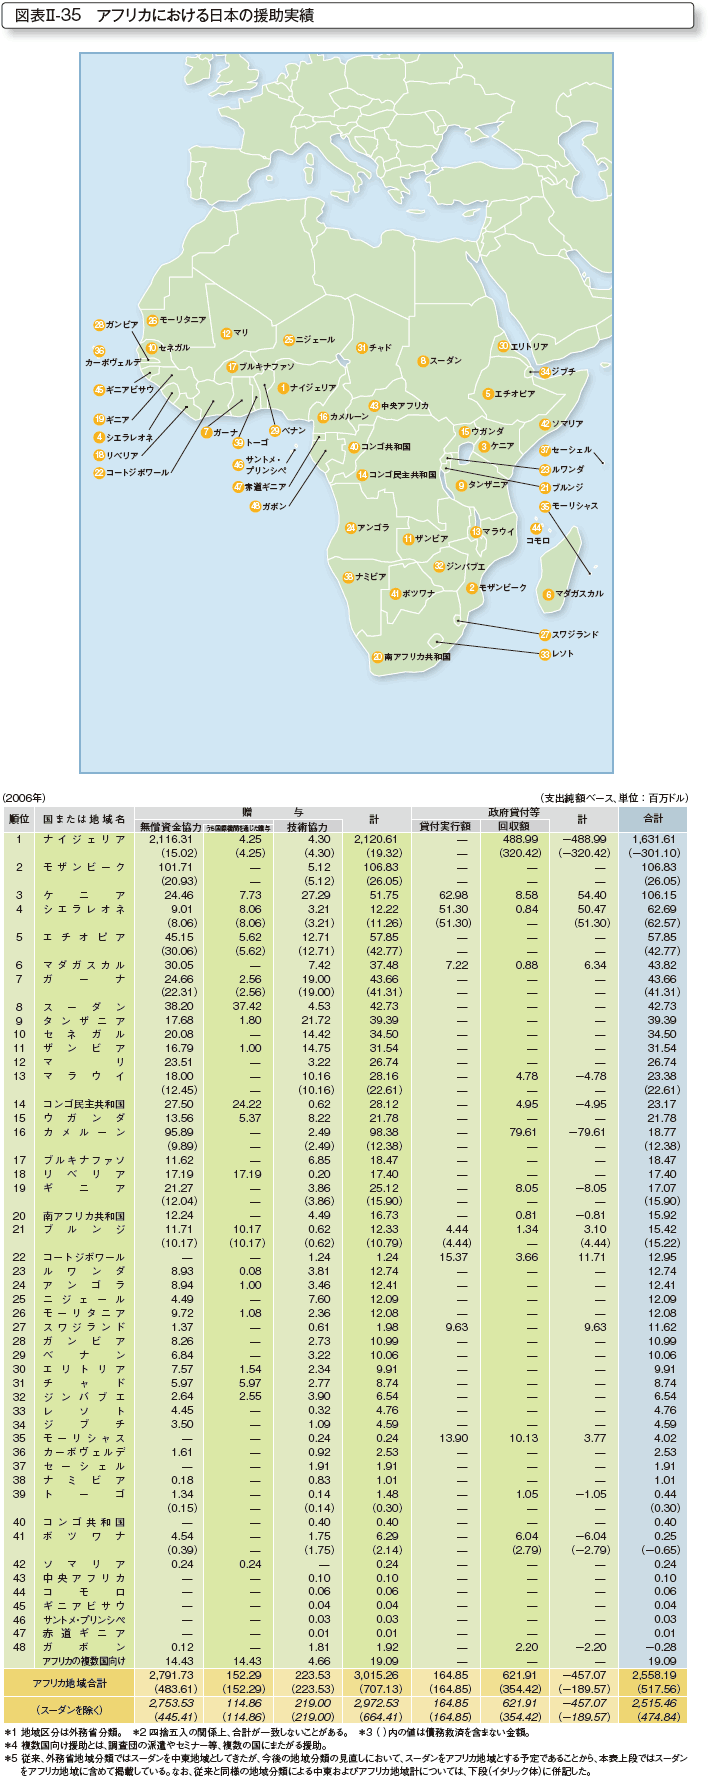 図表II-35 アフリカにおける日本の援助実績